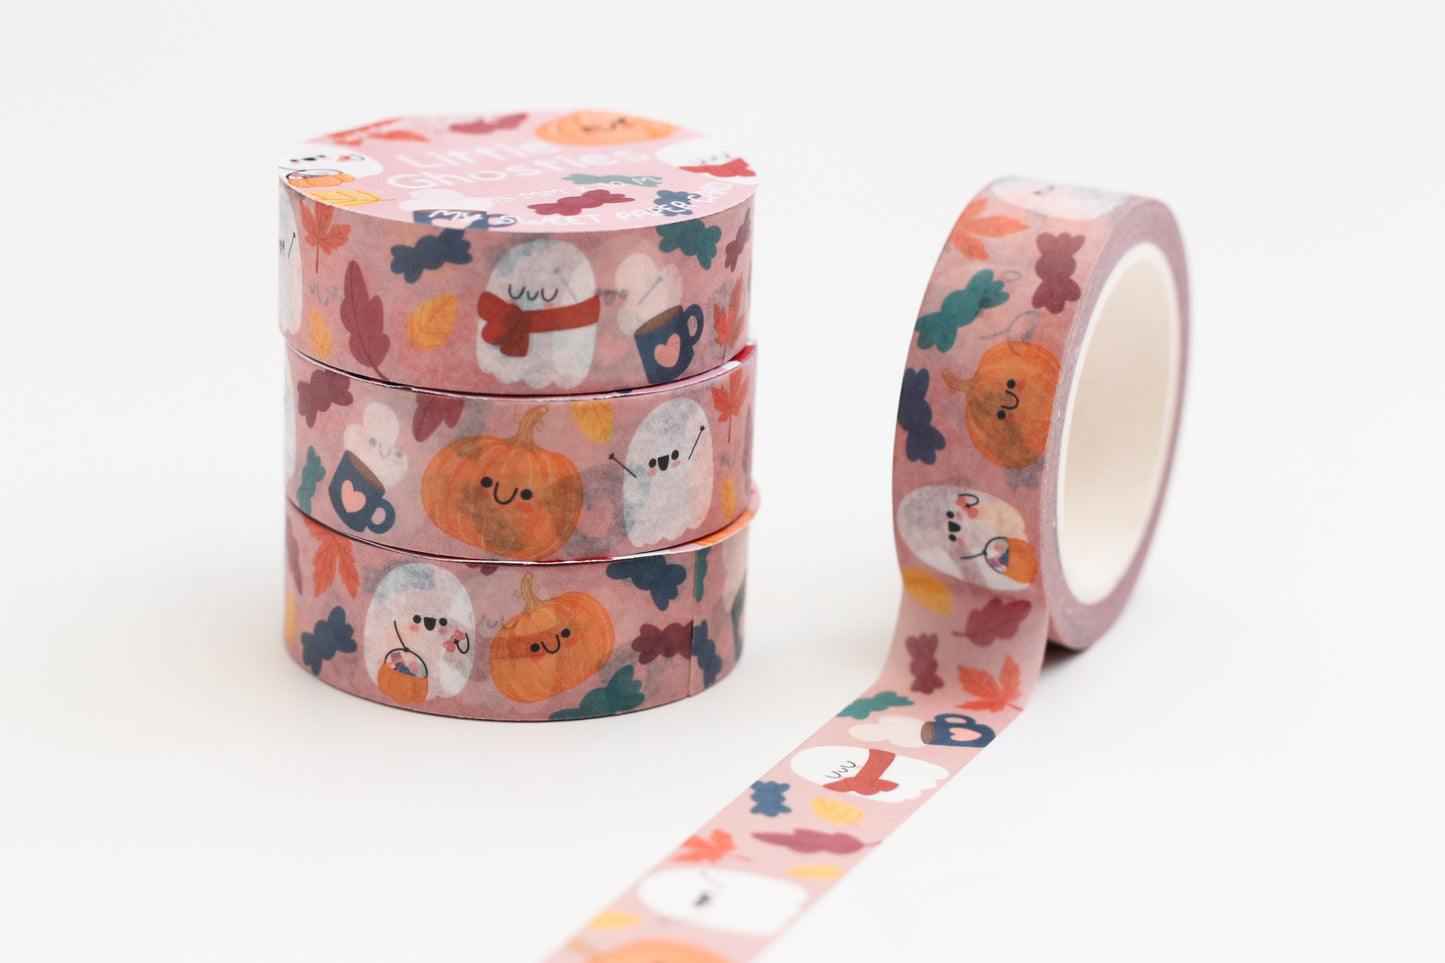 Little Ghosts washi tape - Cute washi tape